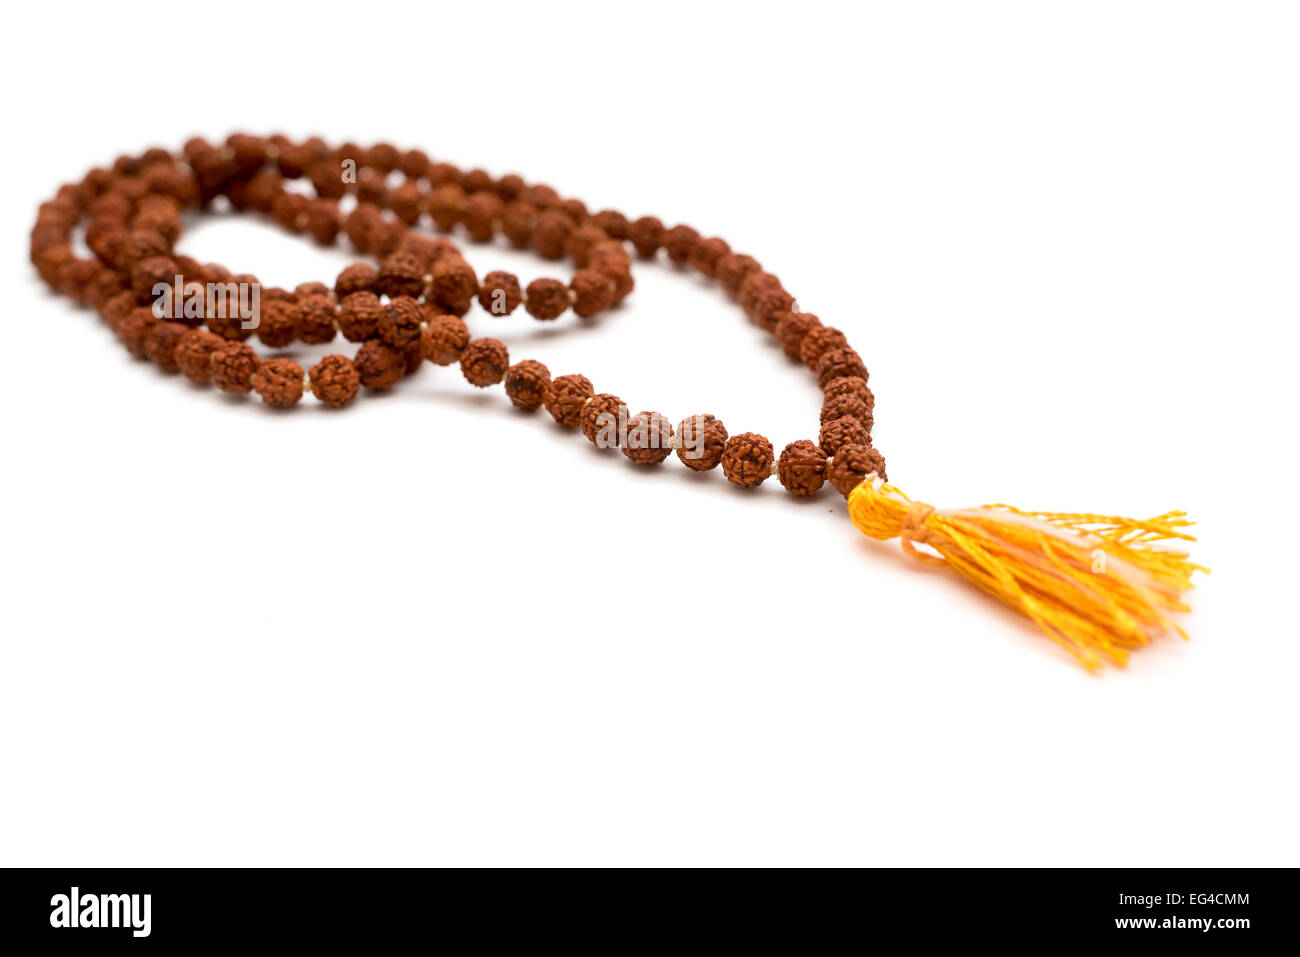 Japa mala. Preghiera talloni realizzati dai semi di rudraksha tree. Isolato su sfondo bianco Foto Stock